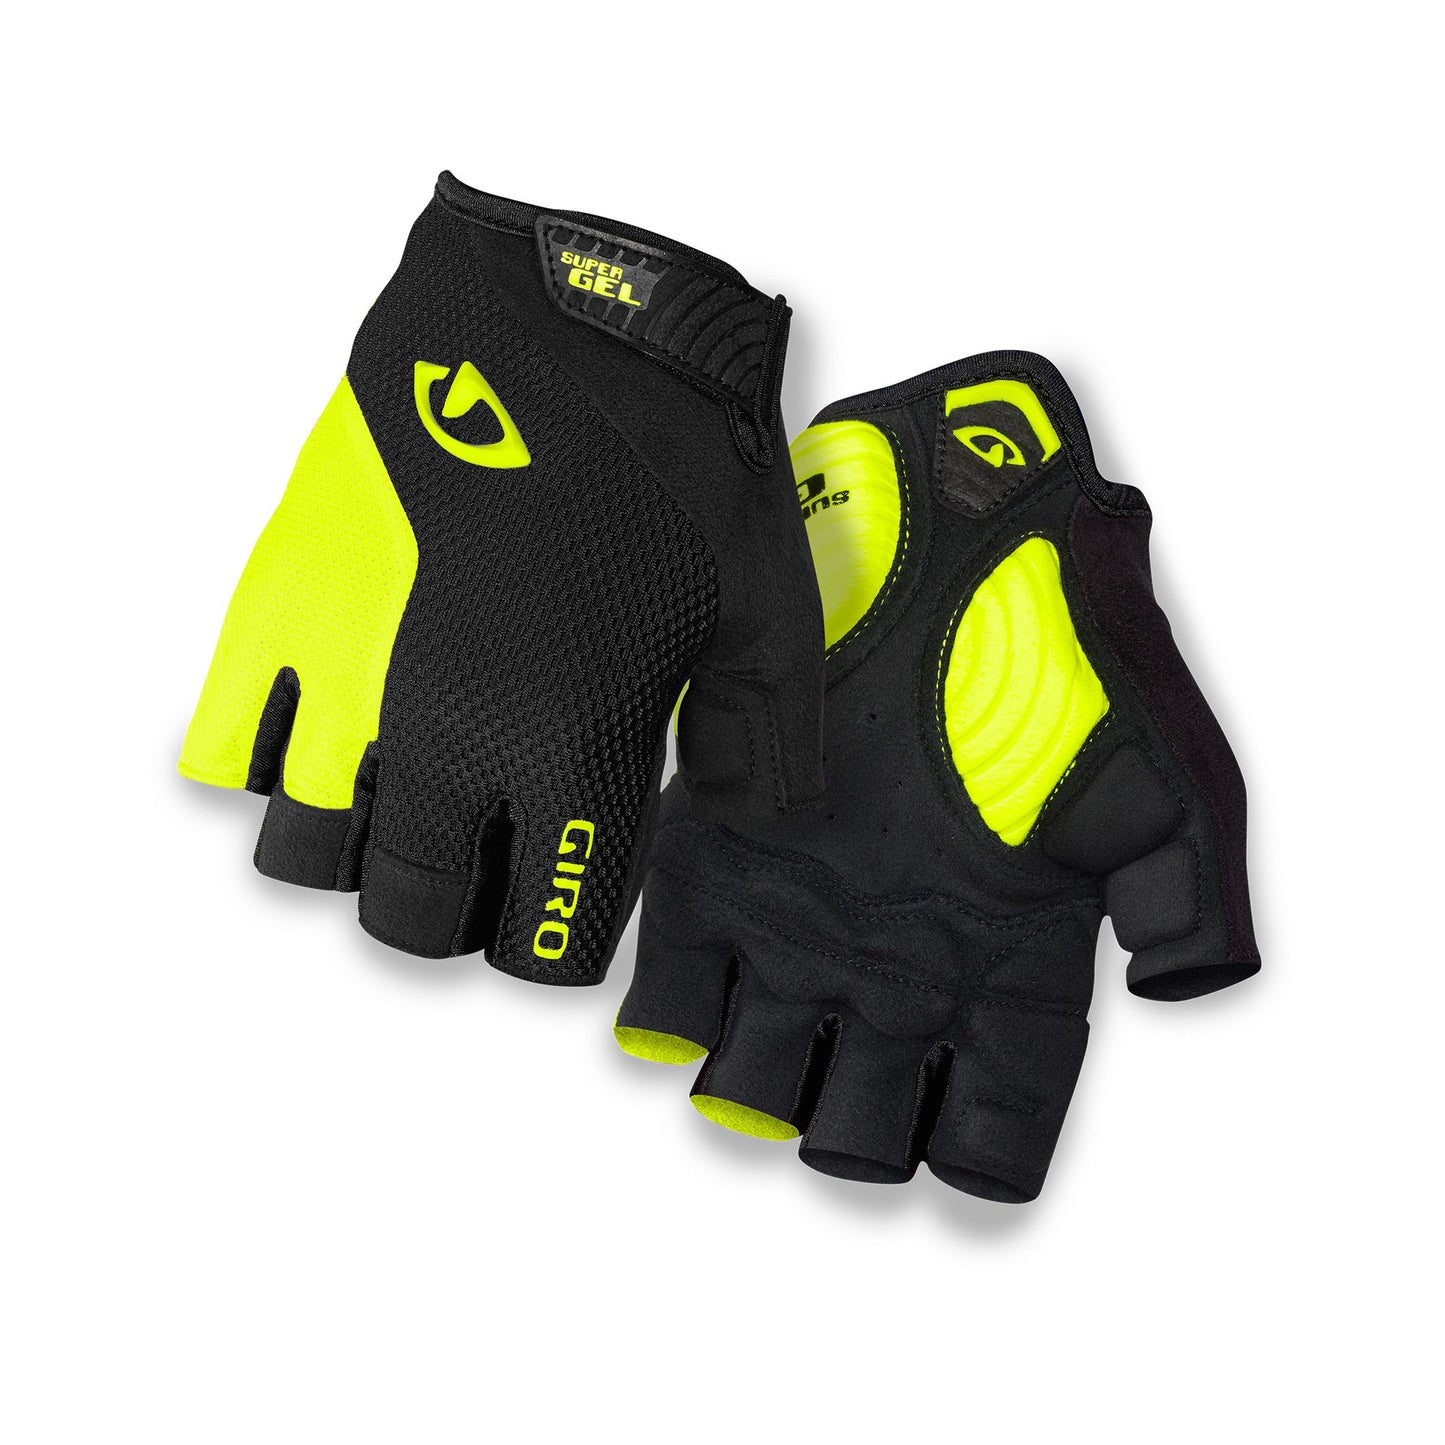 Giro Men's Strade Dure SG Glove Black/Highlight Yellow Bike Gloves